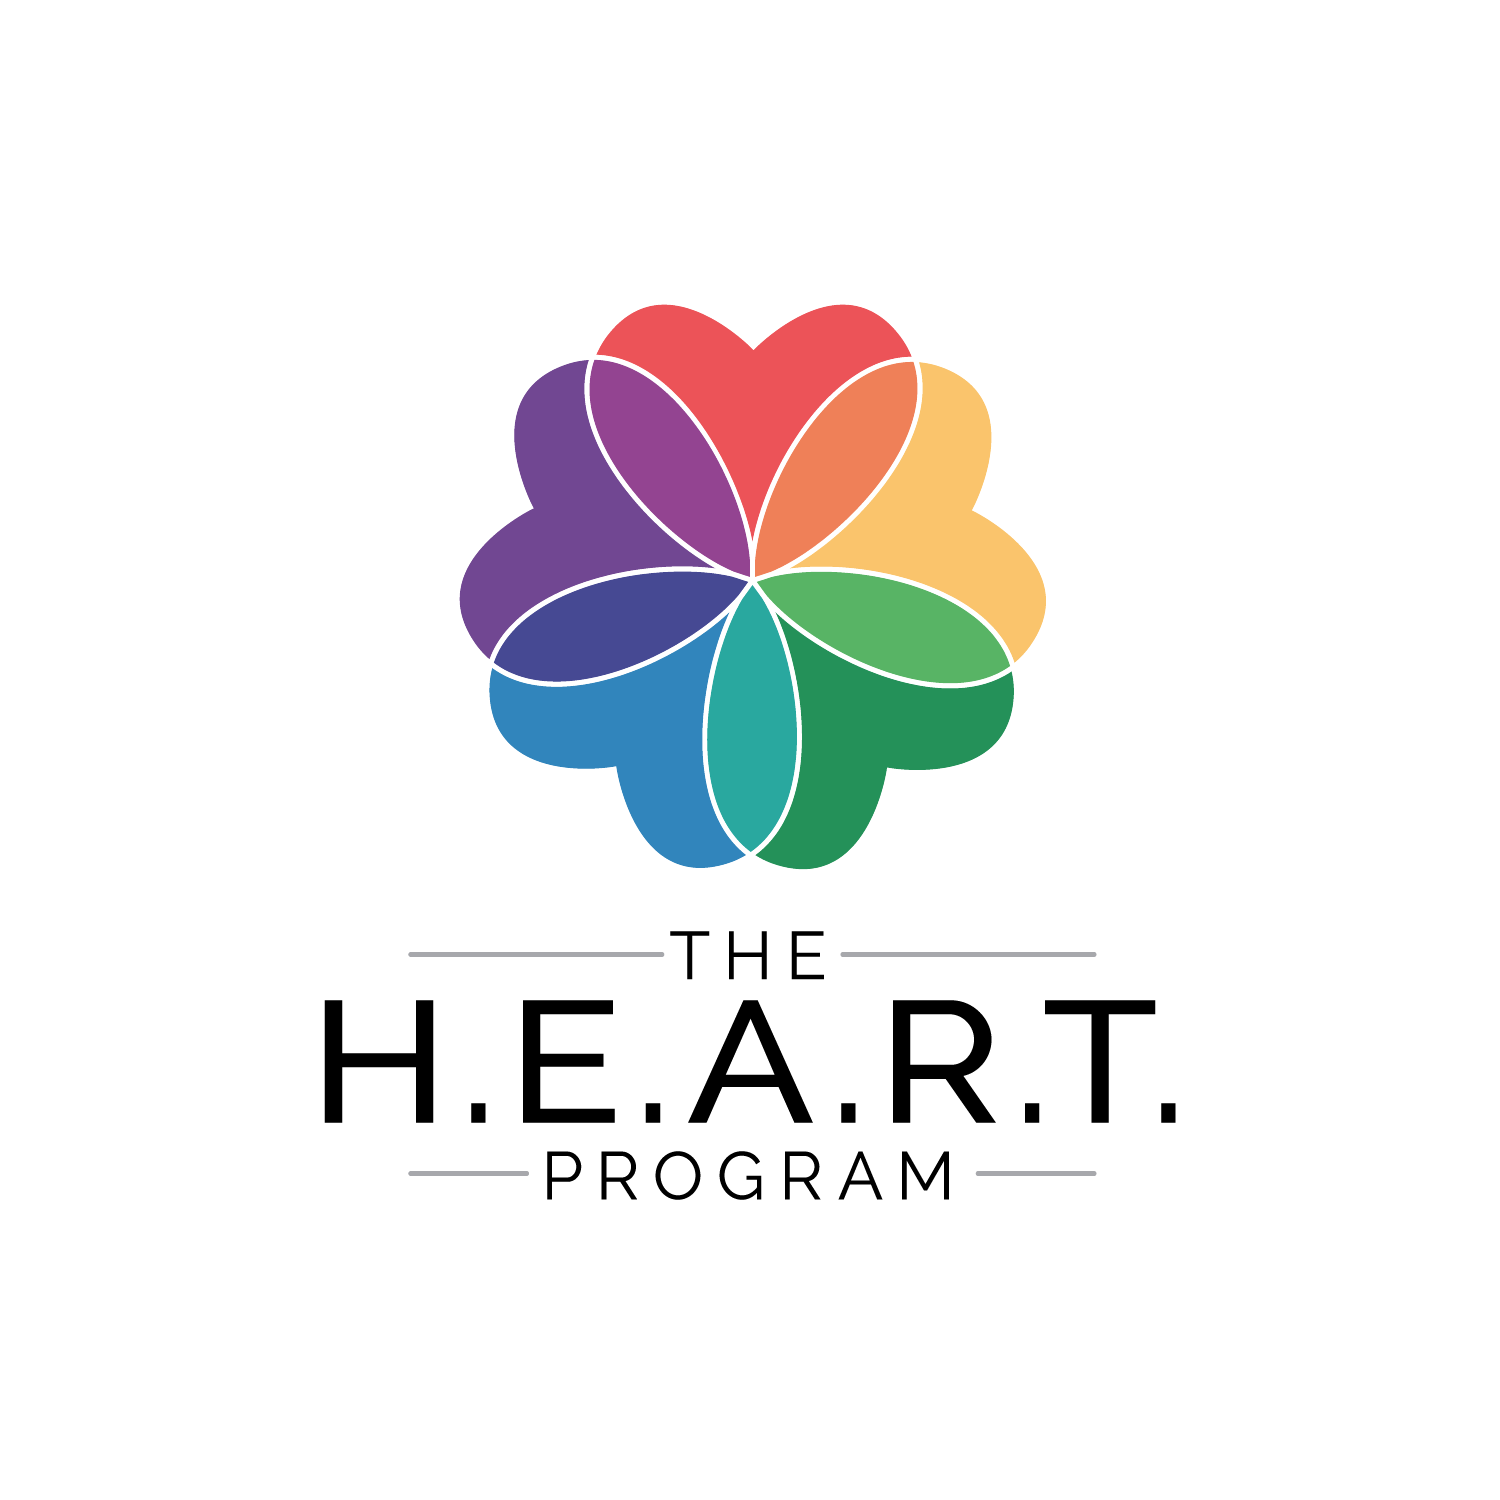 The Heart Program